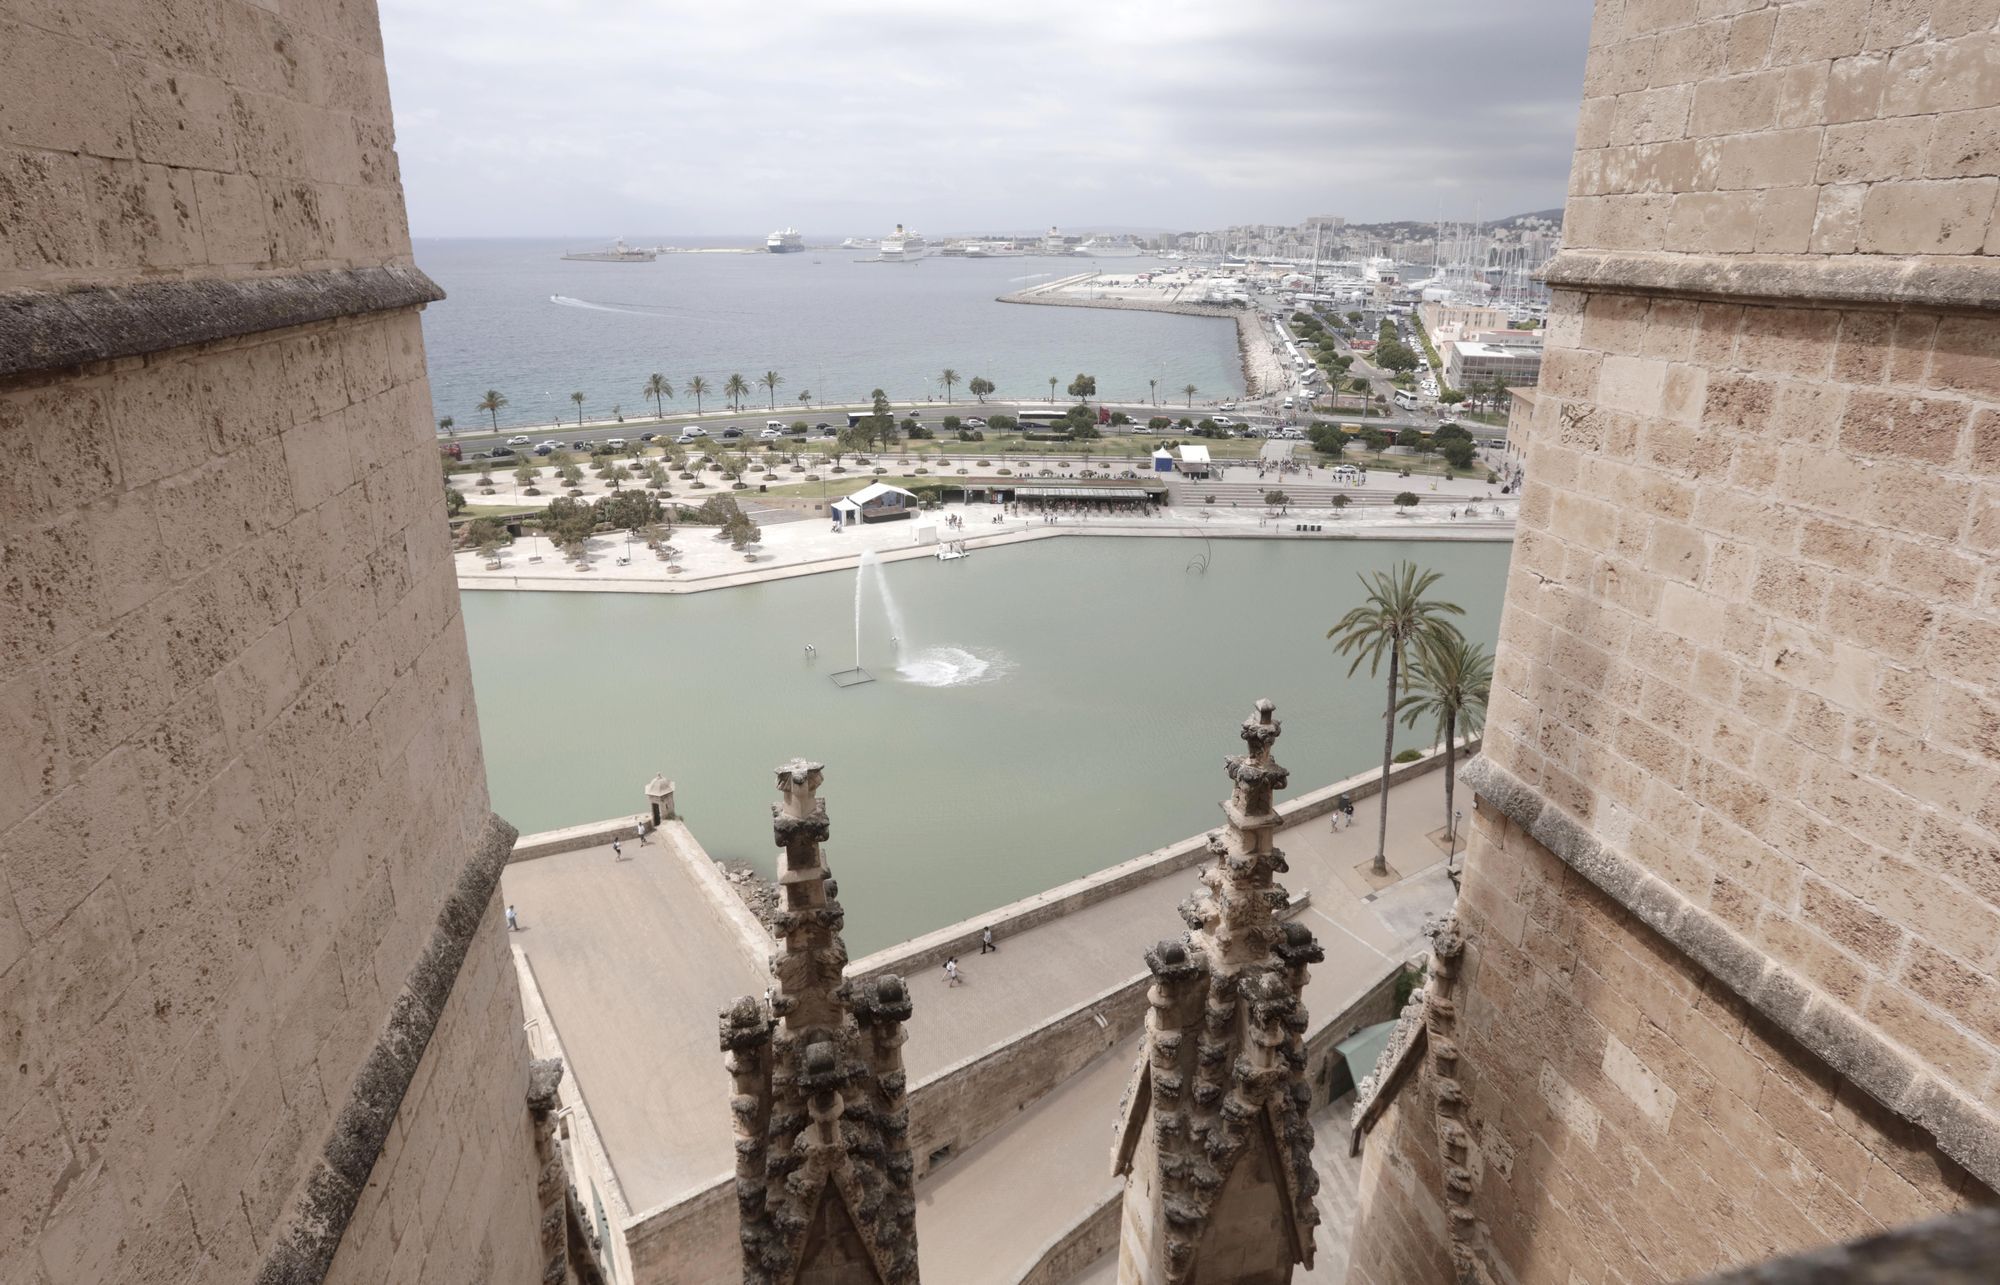 Spektakuläre Aussicht: So ist der Blick von der Dachterrasse der Kathedrale in Palma de Mallorca